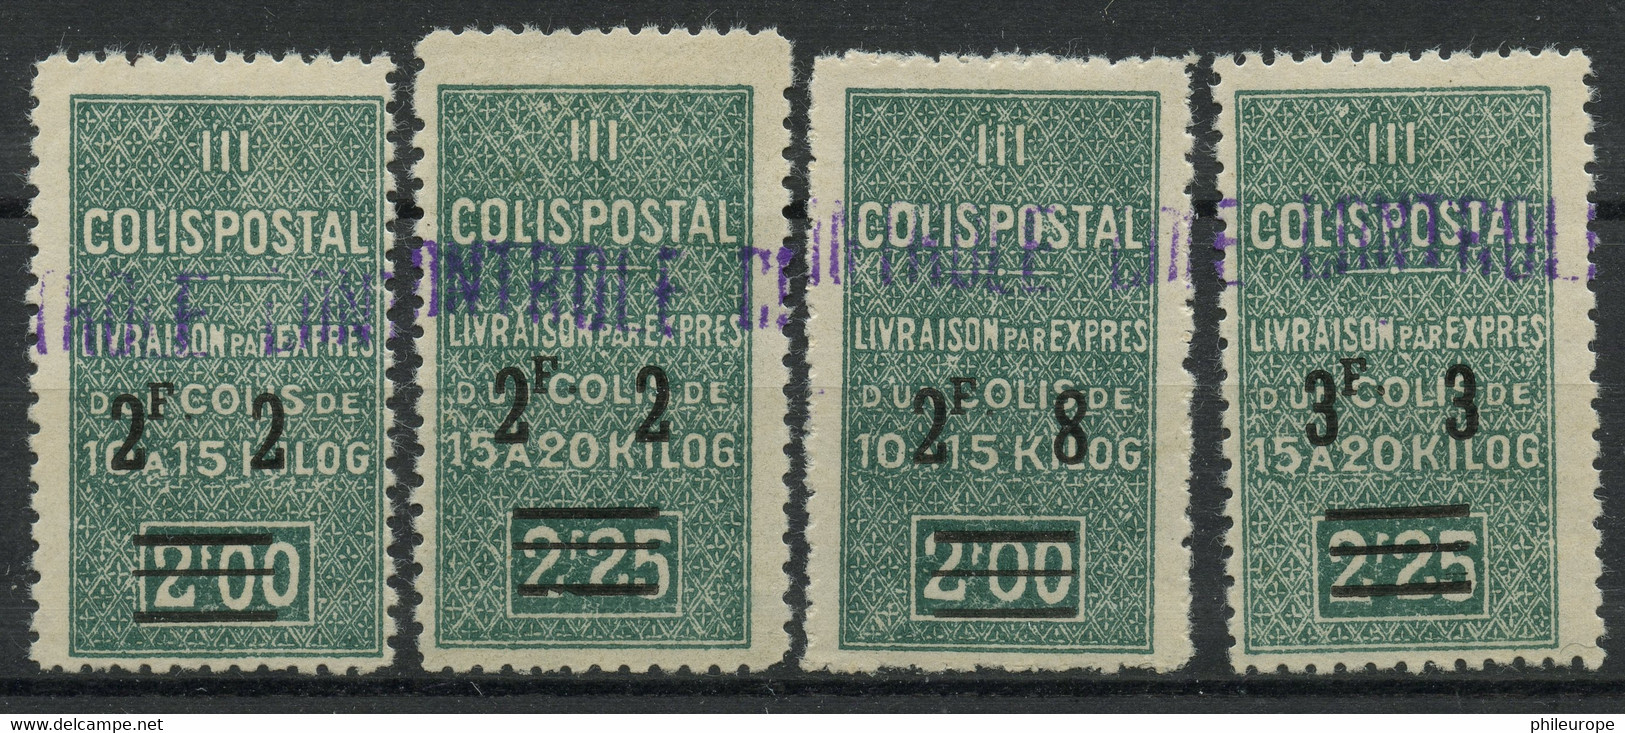 Algerie (1941) Colis Postaux N 73 A 76 (charniere) - Paquetes Postales